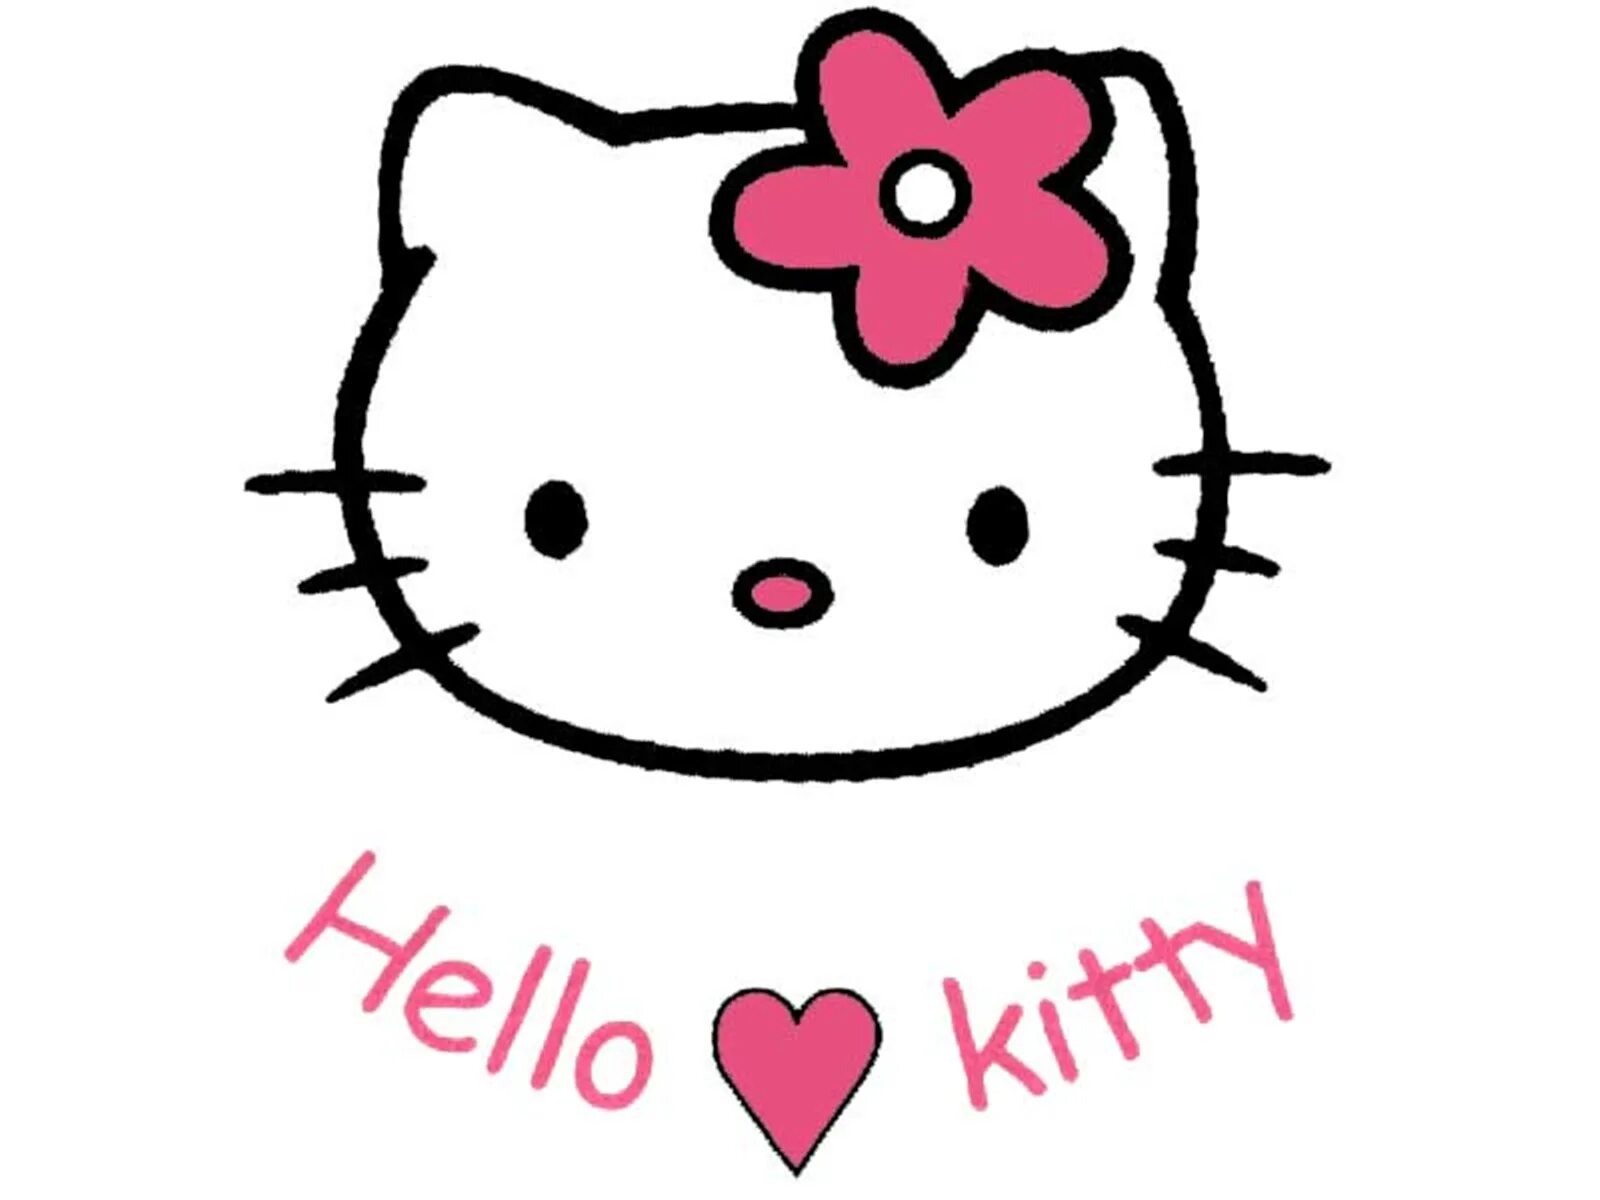 Хелло кит. Хелло Китти. Хеллоу Китти hello Kitty. Мордочка hello Kitty. Хелло Китти картинки.